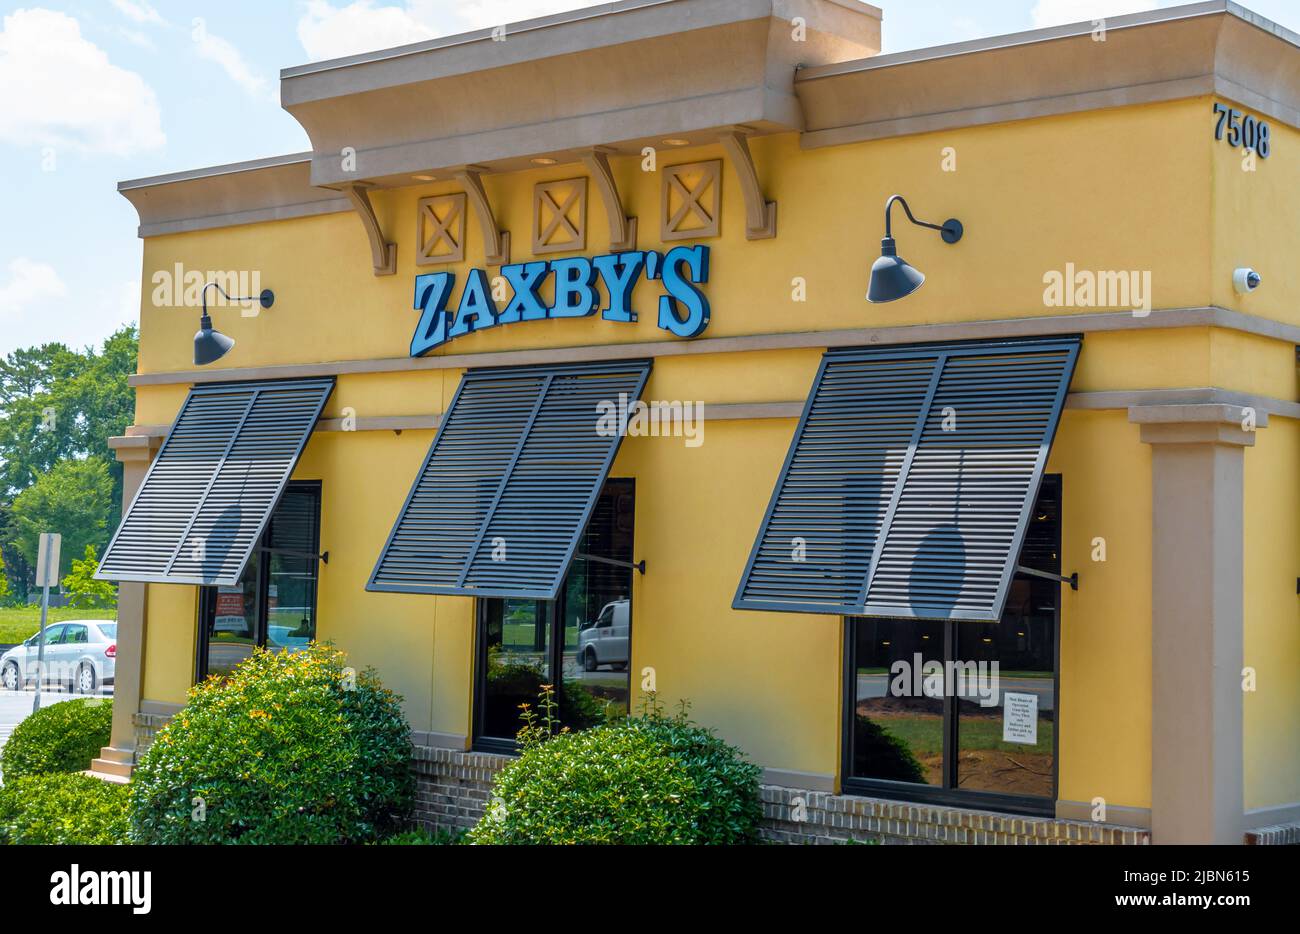 Zaxby's Restaurant Außenfassade Marke und Logo Beschilderung in pulverblauen Buchstaben auf einem gelb beigen Gebäude mit Fensterblenden an einem hellen sonnigen Tag. Stockfoto